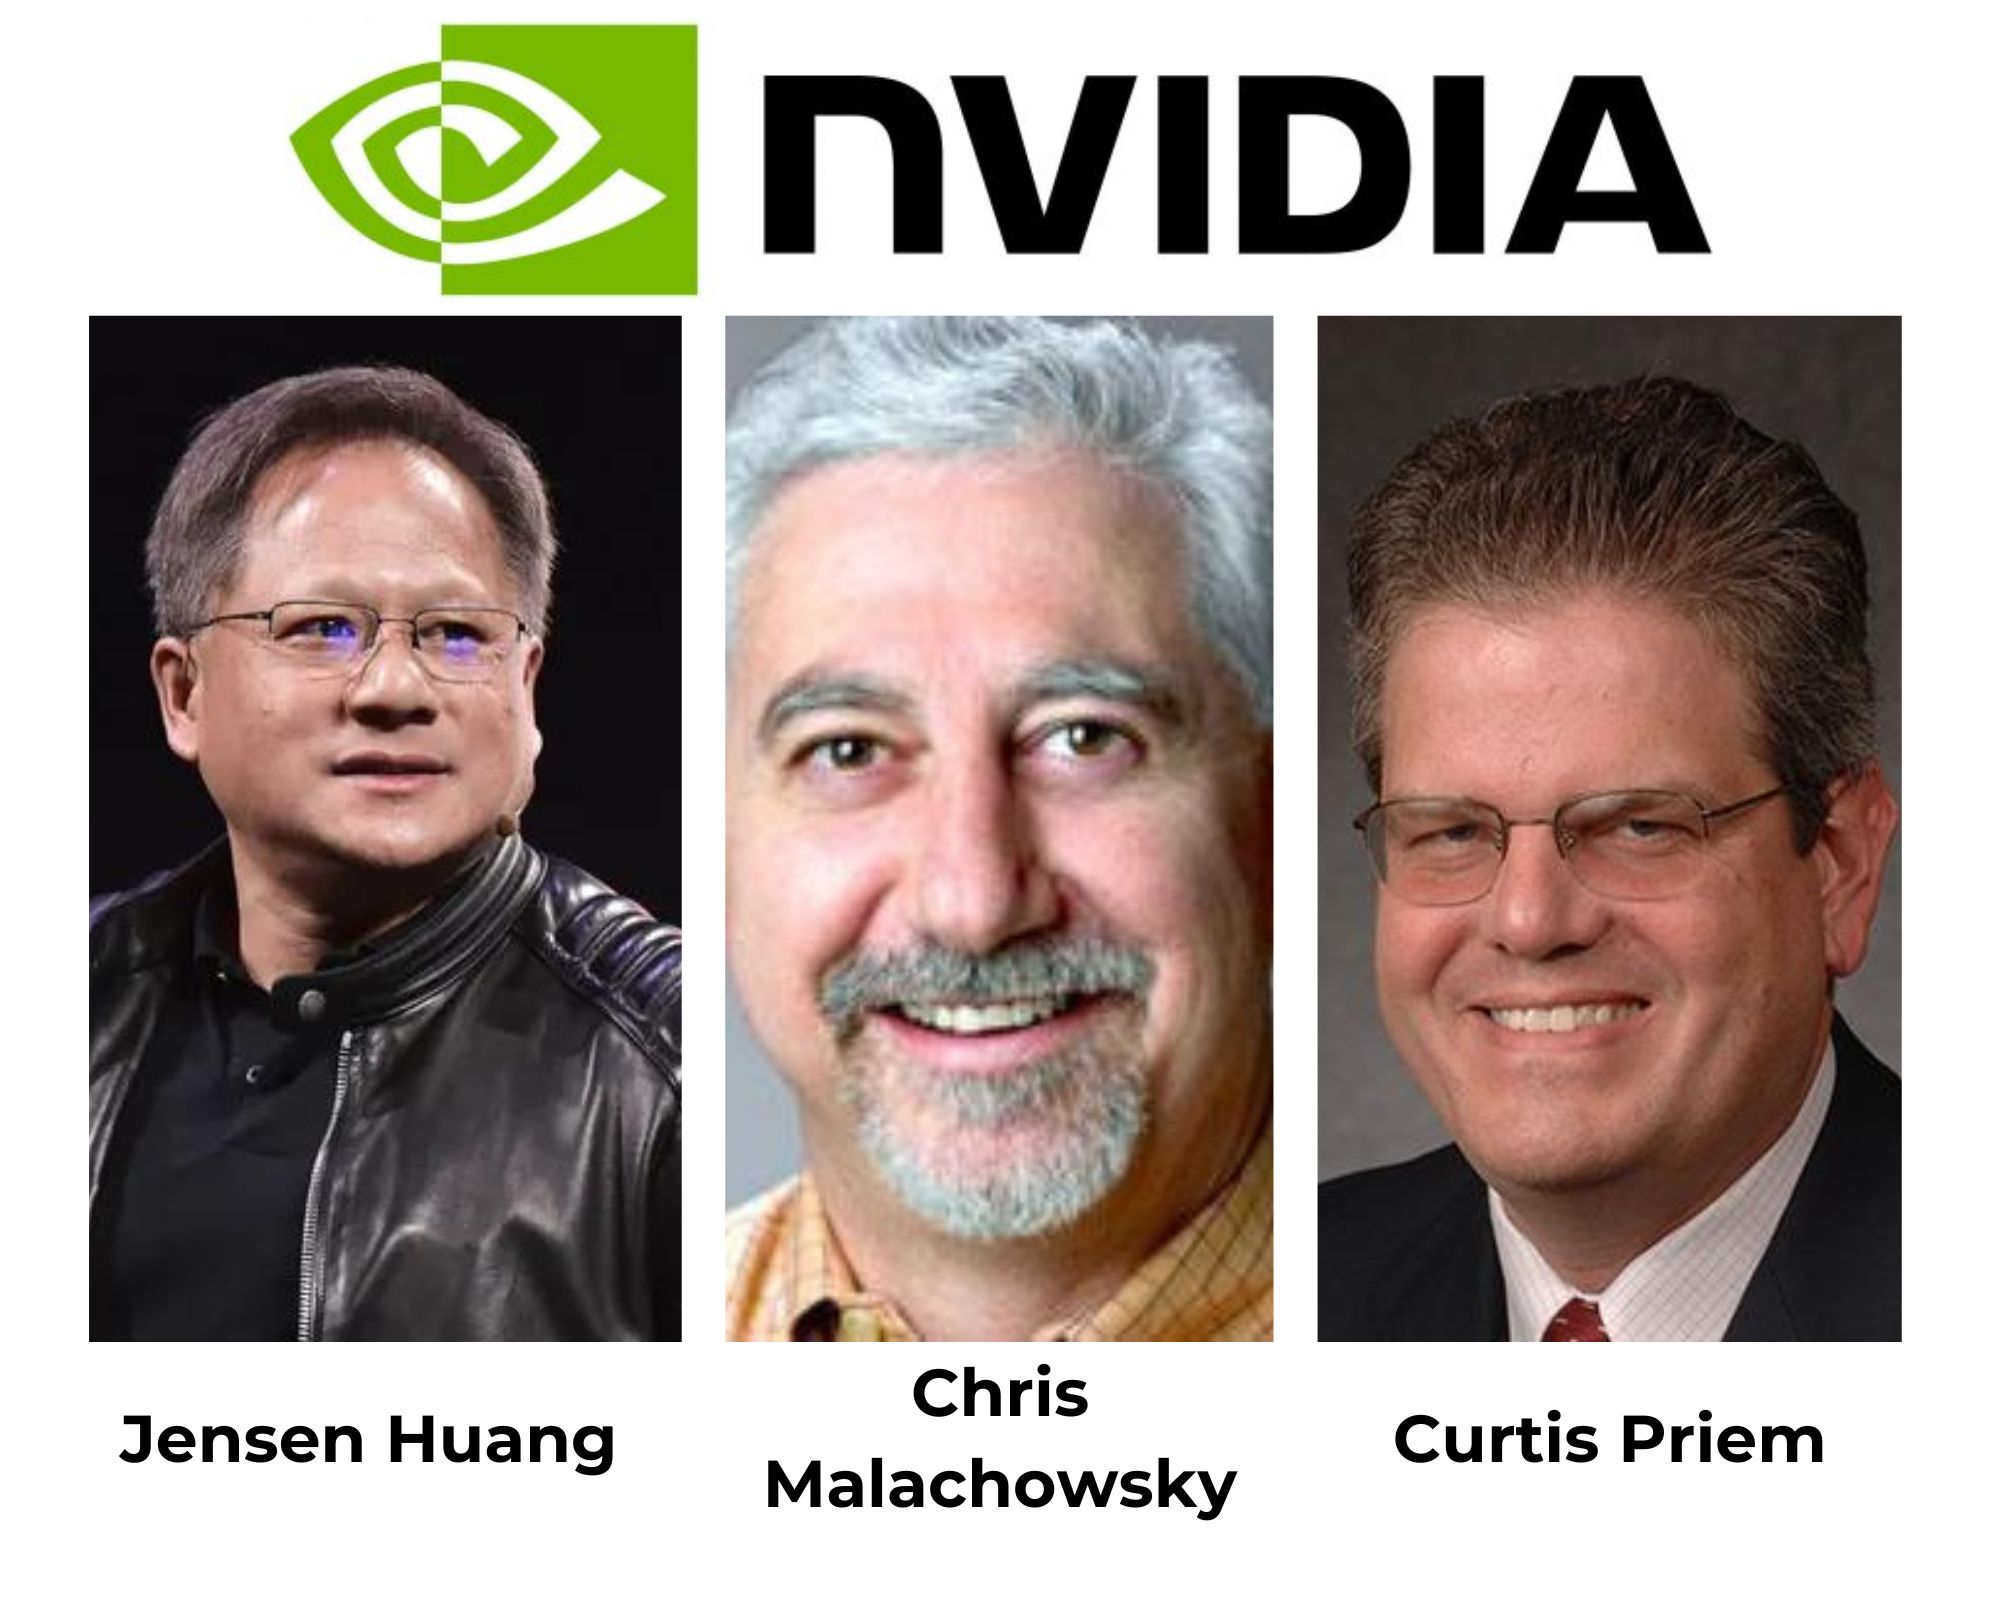 Los 3 fundadores de NVIDIA. De izquierda a derecha: Jensen Huang, Chris Malachowsky y Curtis Priem